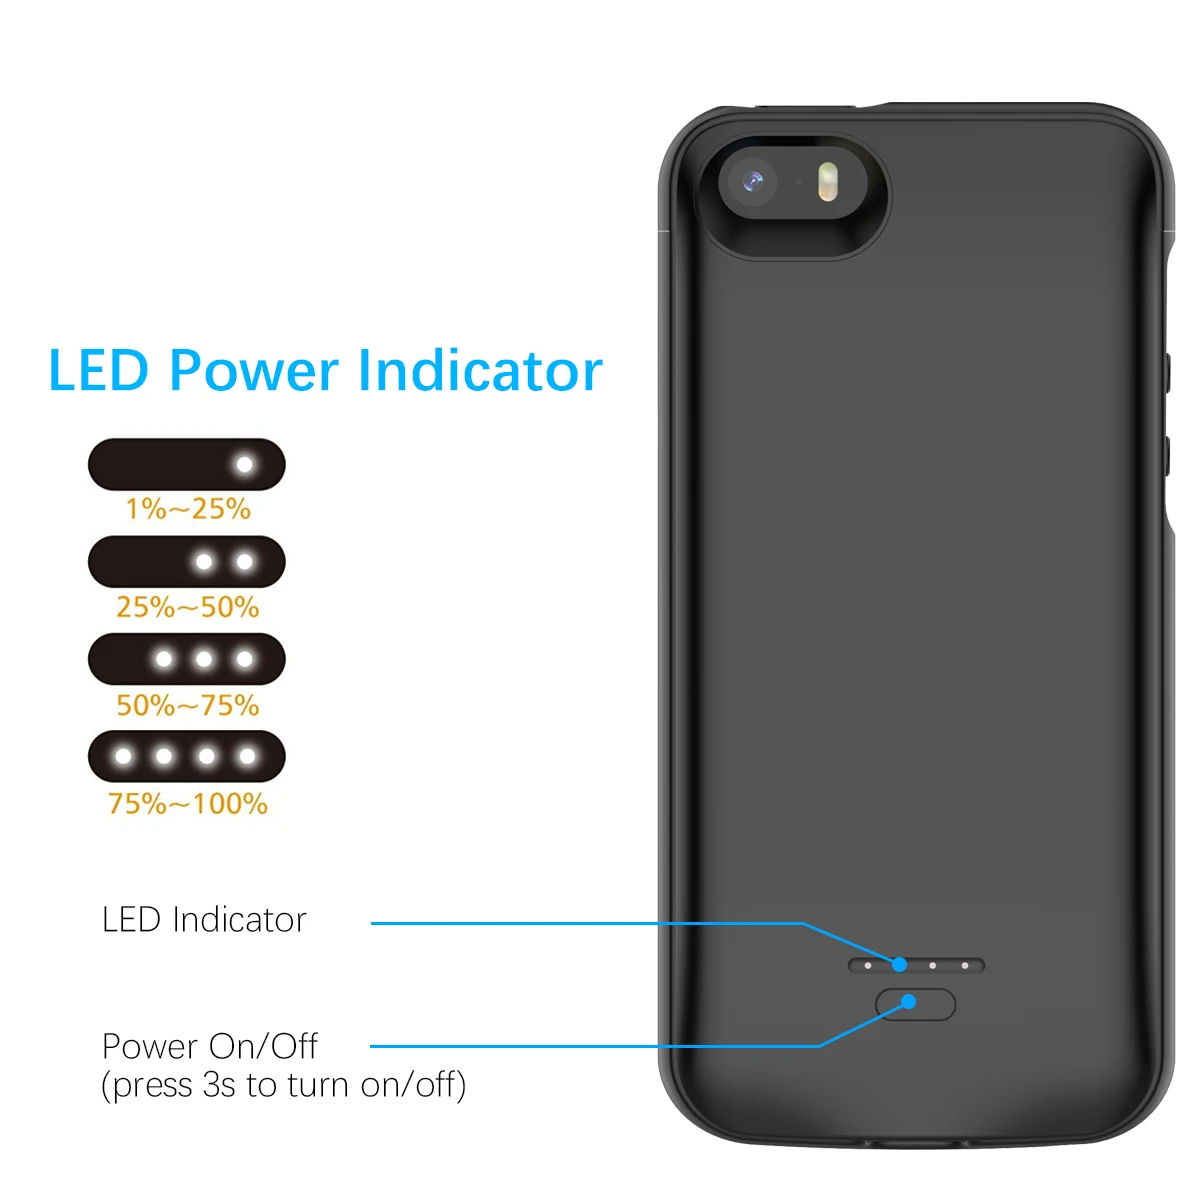 Чехол WIN, чехол для зарядного устройства для iPhone SE 5SE 5 5S, 4000 мАч, внешний аккумулятор, чехол для зарядки, чехол для зарядного устройства для iPhone 5, чехол